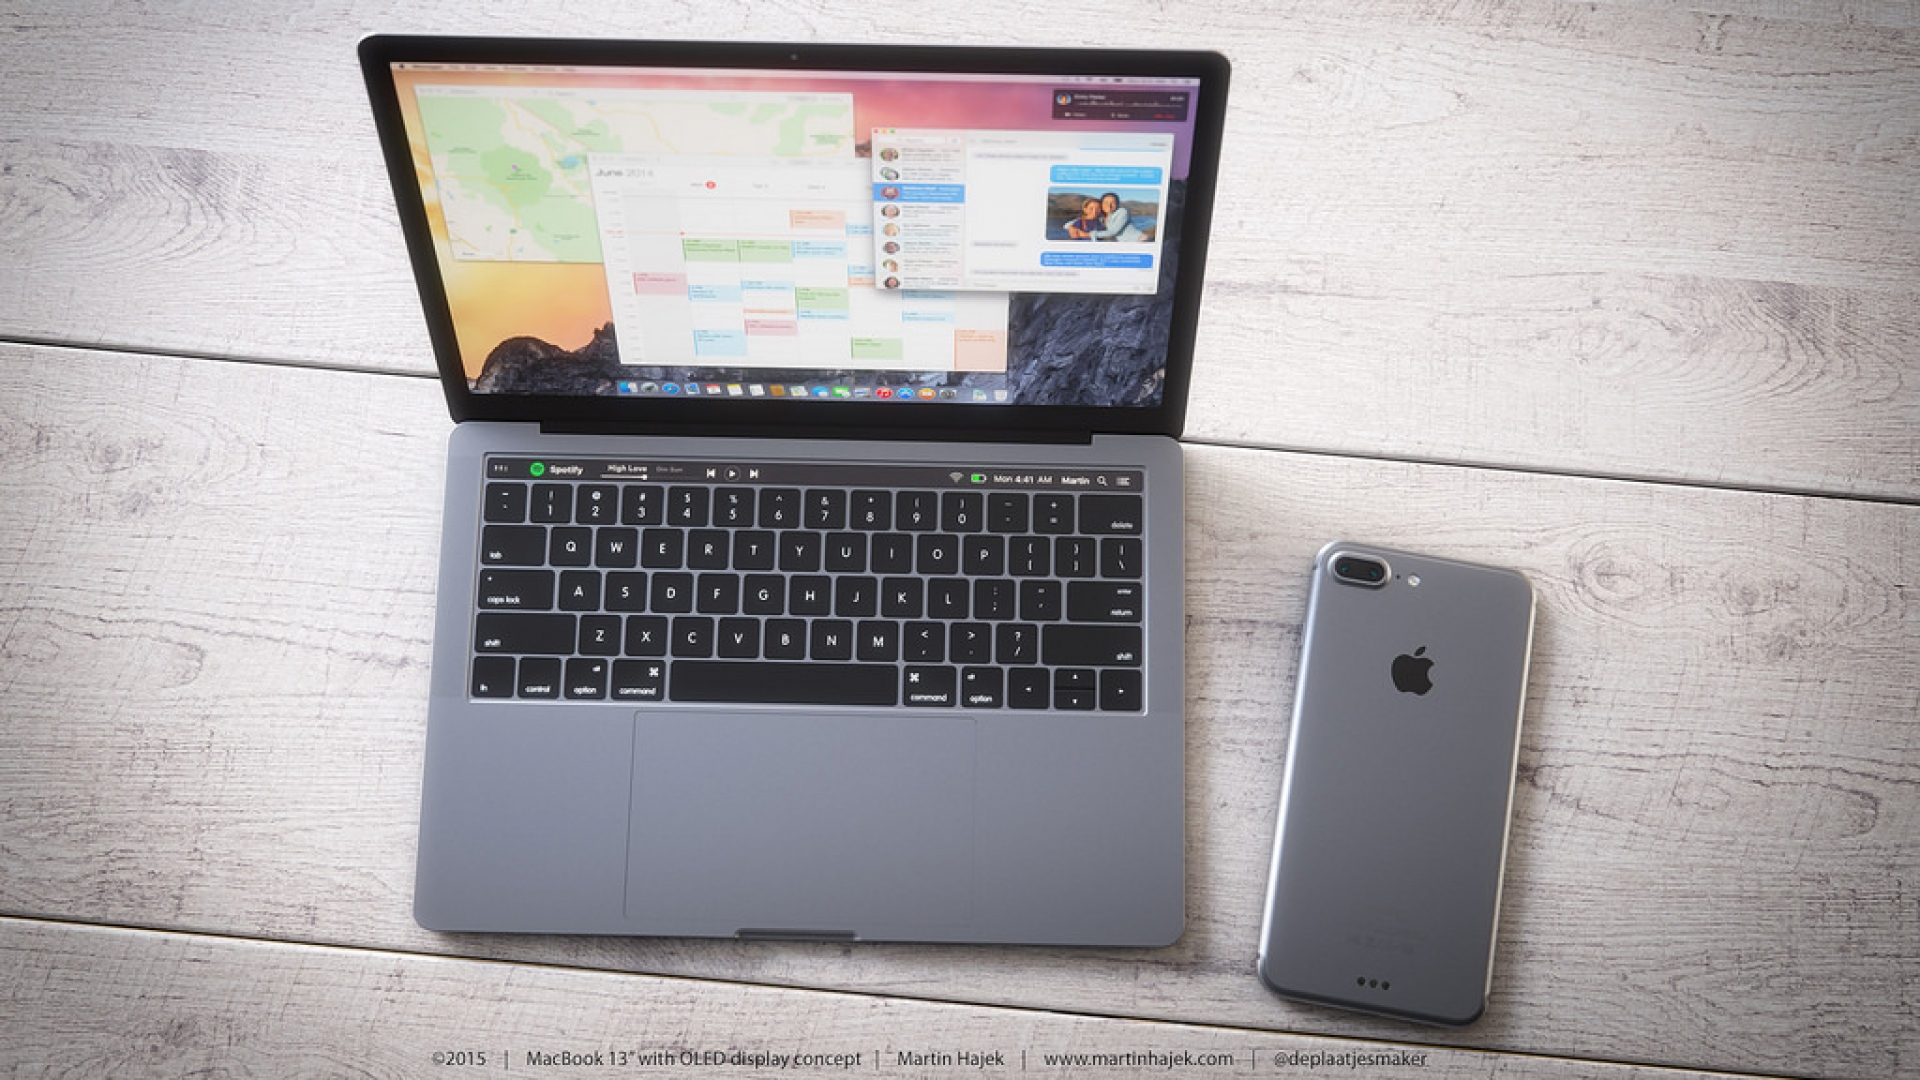 ปุ่มเปิดเครื่องของ MacBook Pro รุ่นใหม่จะมี Touch ID สำหรับสแกนลายนิ้วมือด้วย